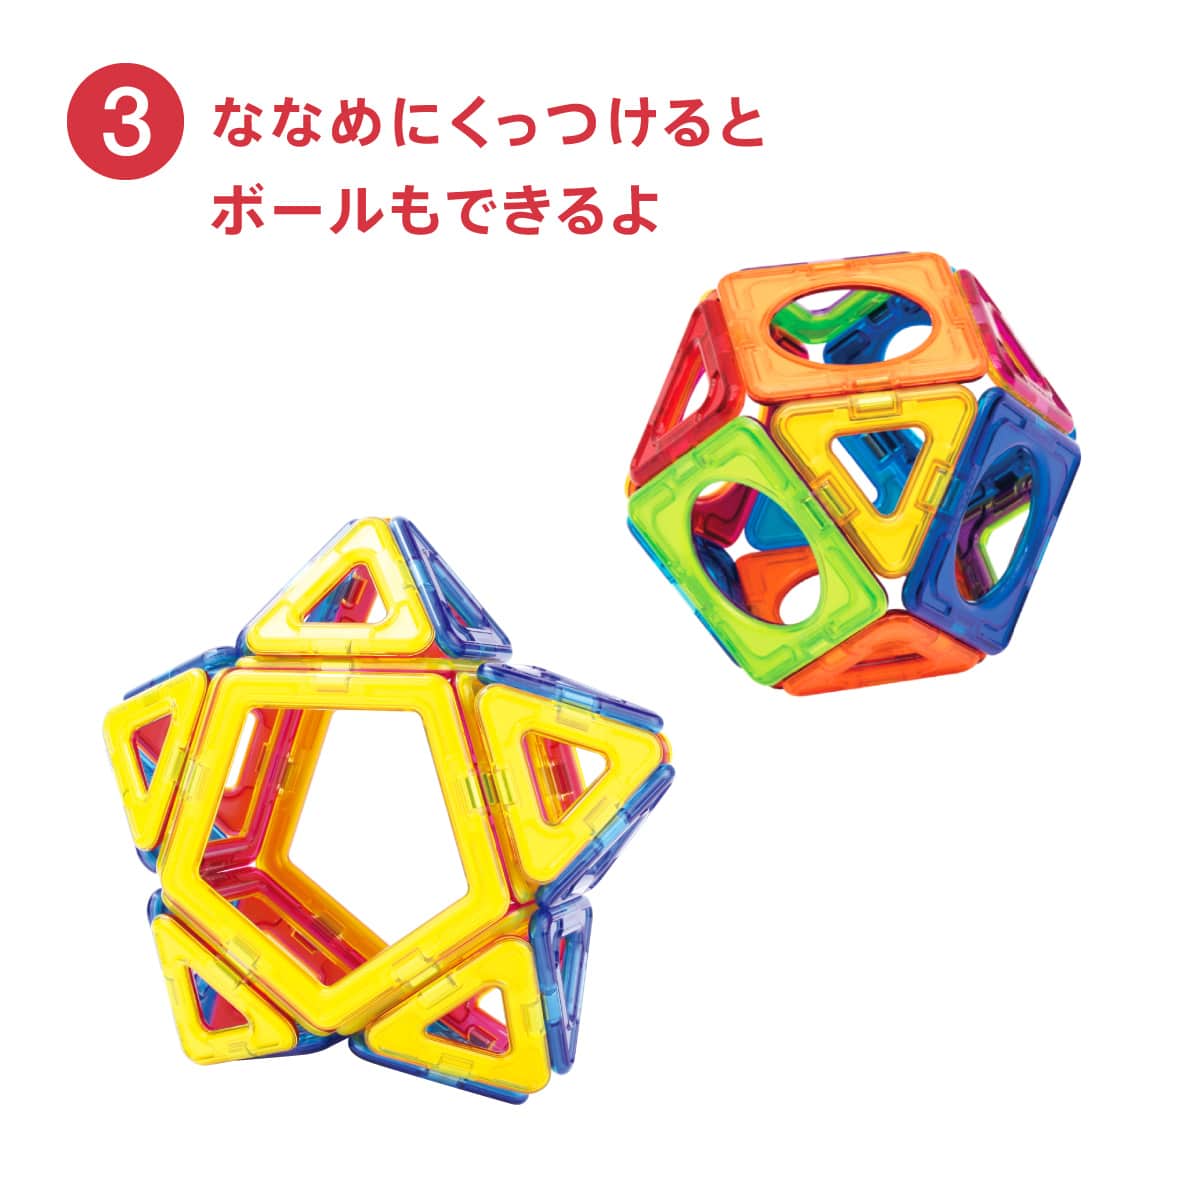 マグ・フォーマー ディスカバリーBOX（71ピース）日本語あそび方冊子付: ボーネルンド  オンラインショップ。世界中の知育玩具など、あそび道具がたくさん。0歳からのお子様へのプレゼントにも。